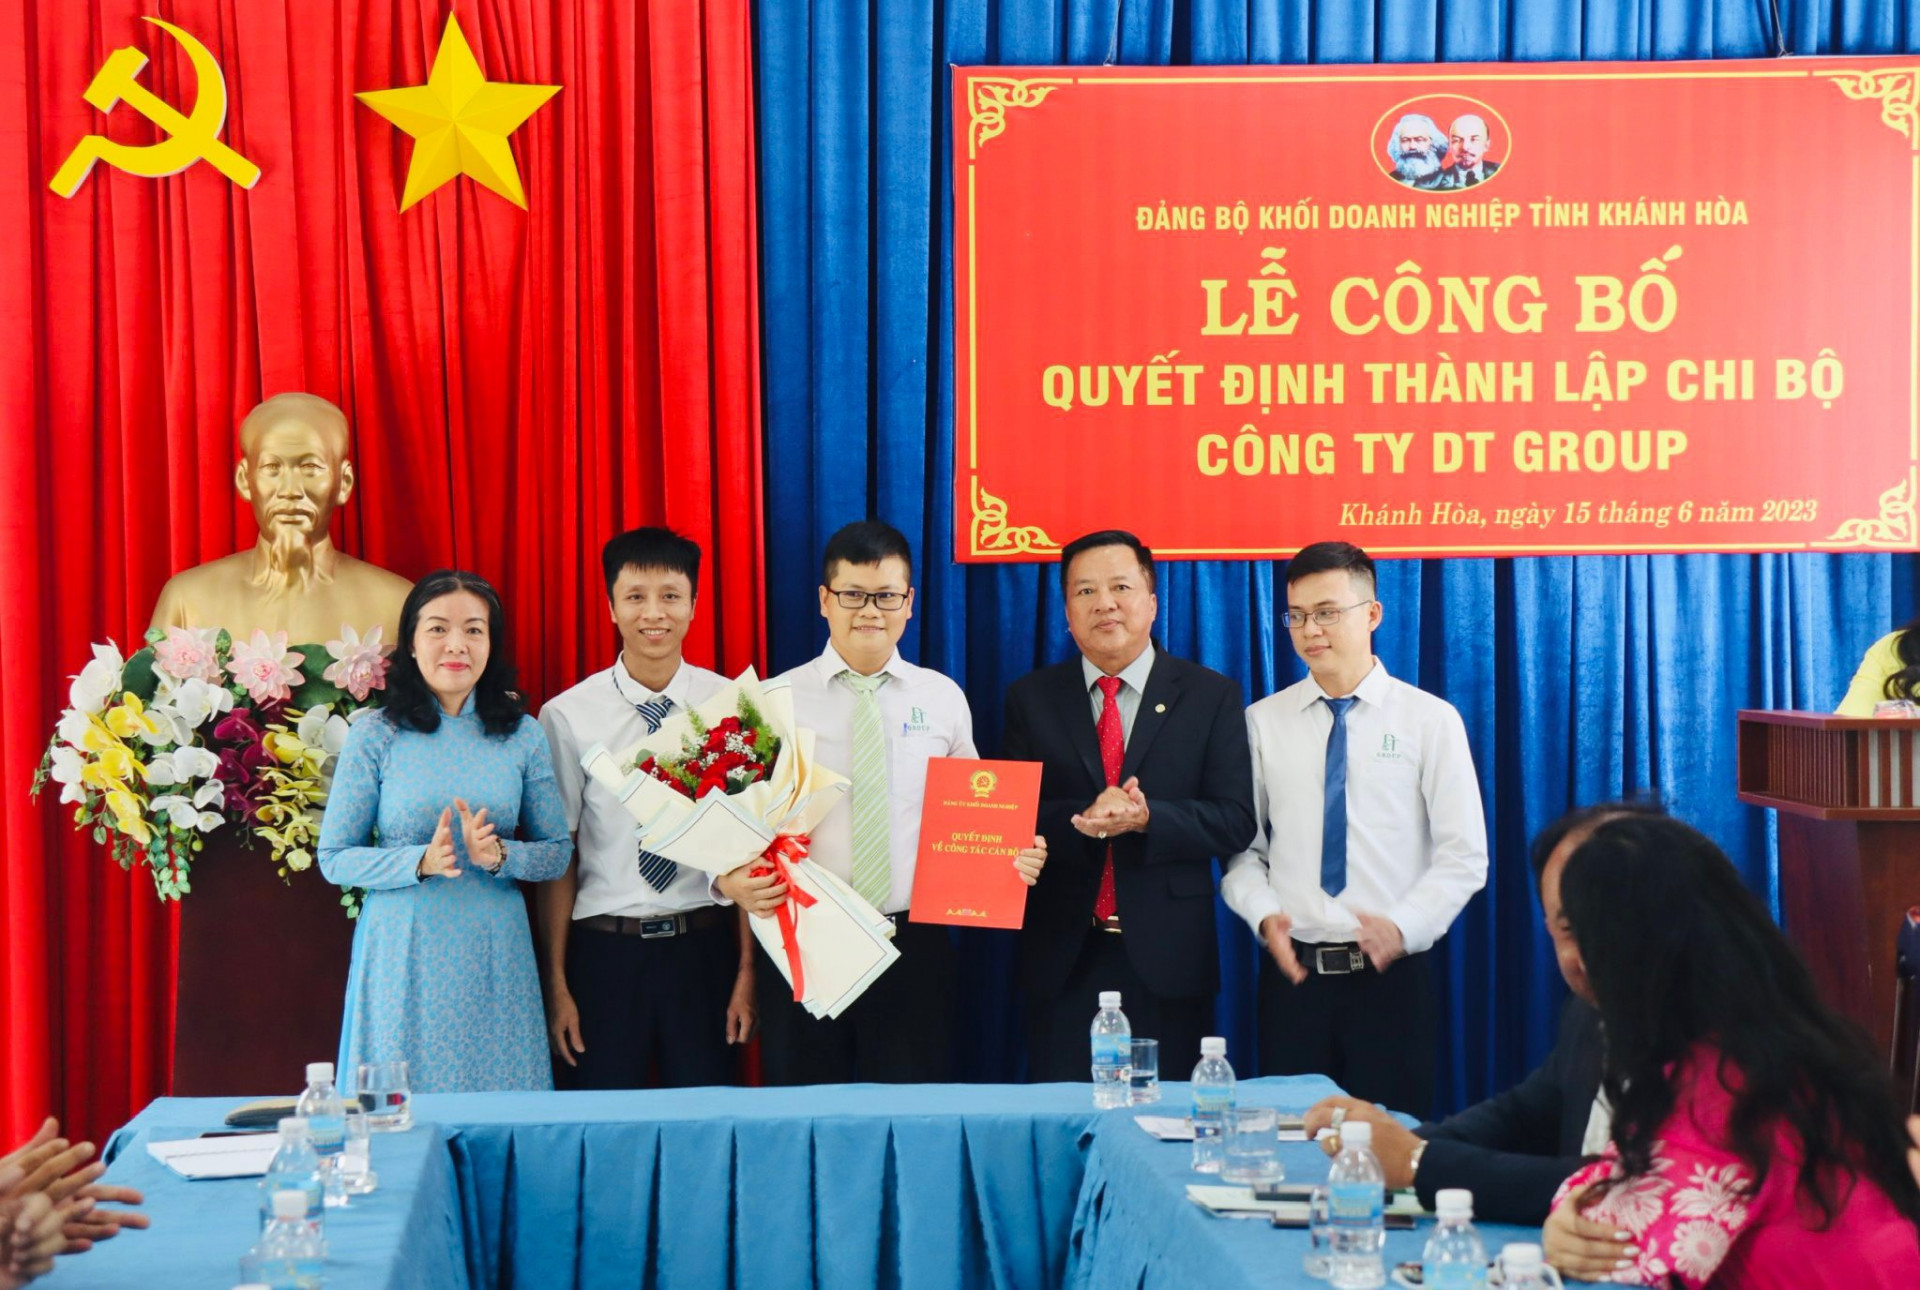 Công bố và trao quyết định thành lập  Chi bộ Công ty Cổ phần Rong biển D&T Khánh Hòa (DT Group).